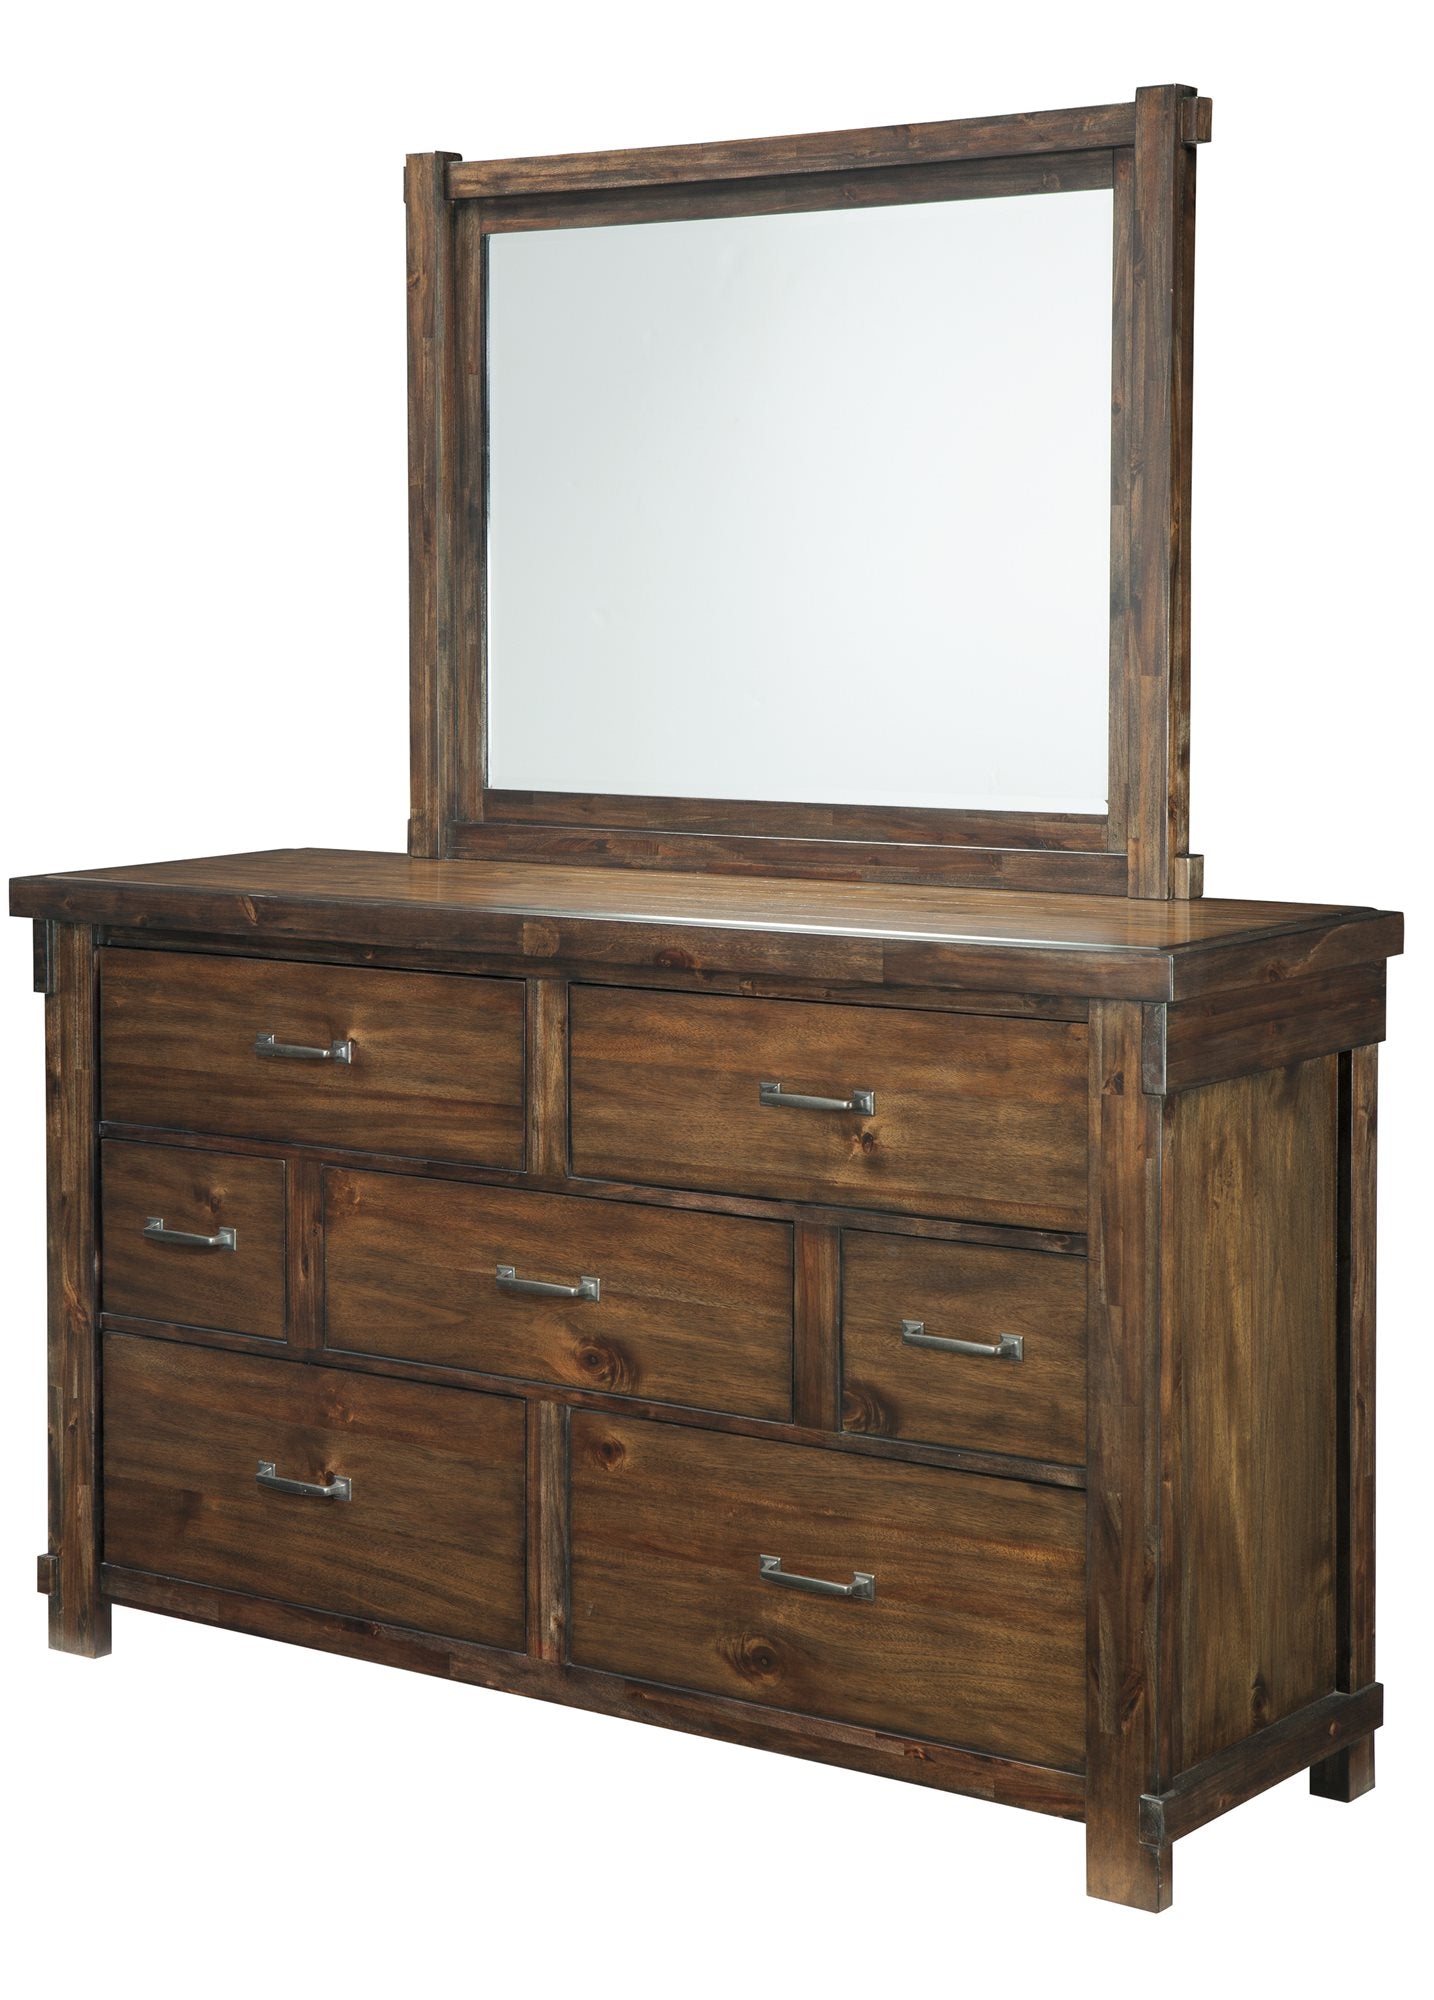 Ashley Lakeleigh Dresser & Mirror in Brown